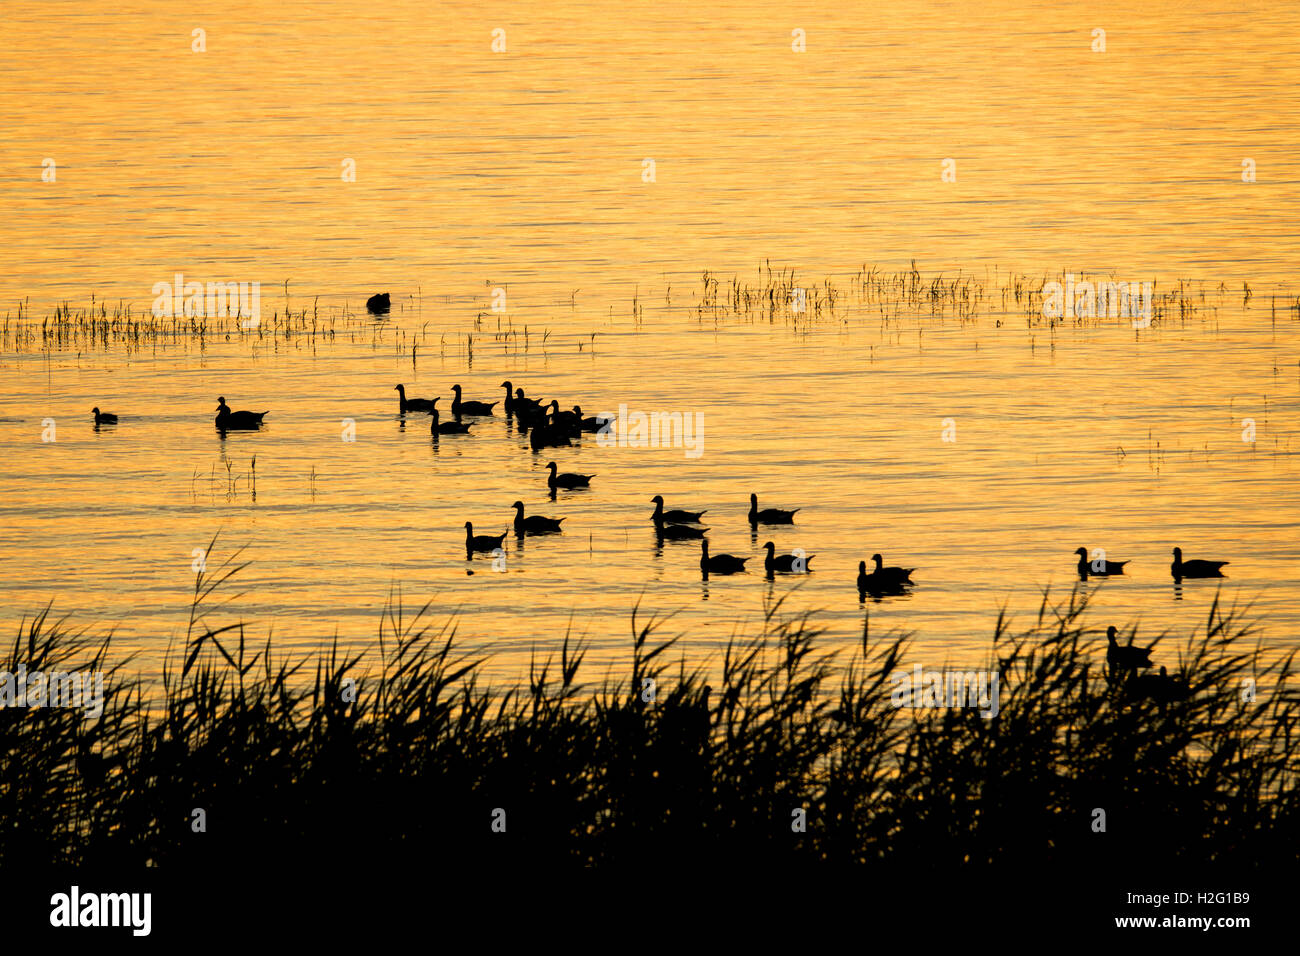 See bei Sonnenuntergang mit Vögel in der Silhouette, Schweden. Schöne Natur-Szene mit Wildtieren. Wasser mit Textfreiraum. Stockfoto